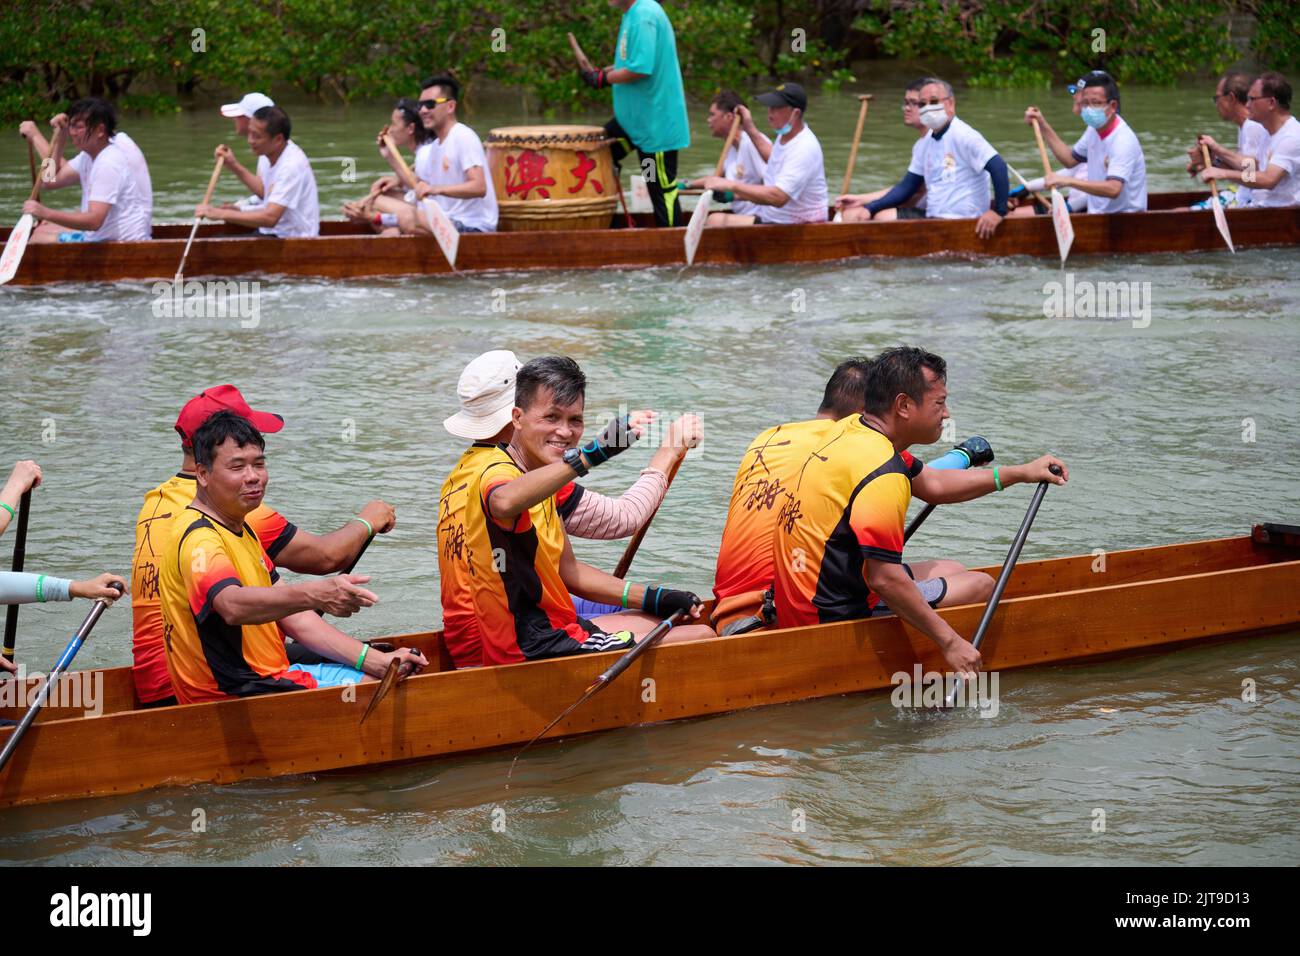 A closeup of People riding dragon boats at the Dragon Boat Festival in Tai O, Hong Kong Stock Photo